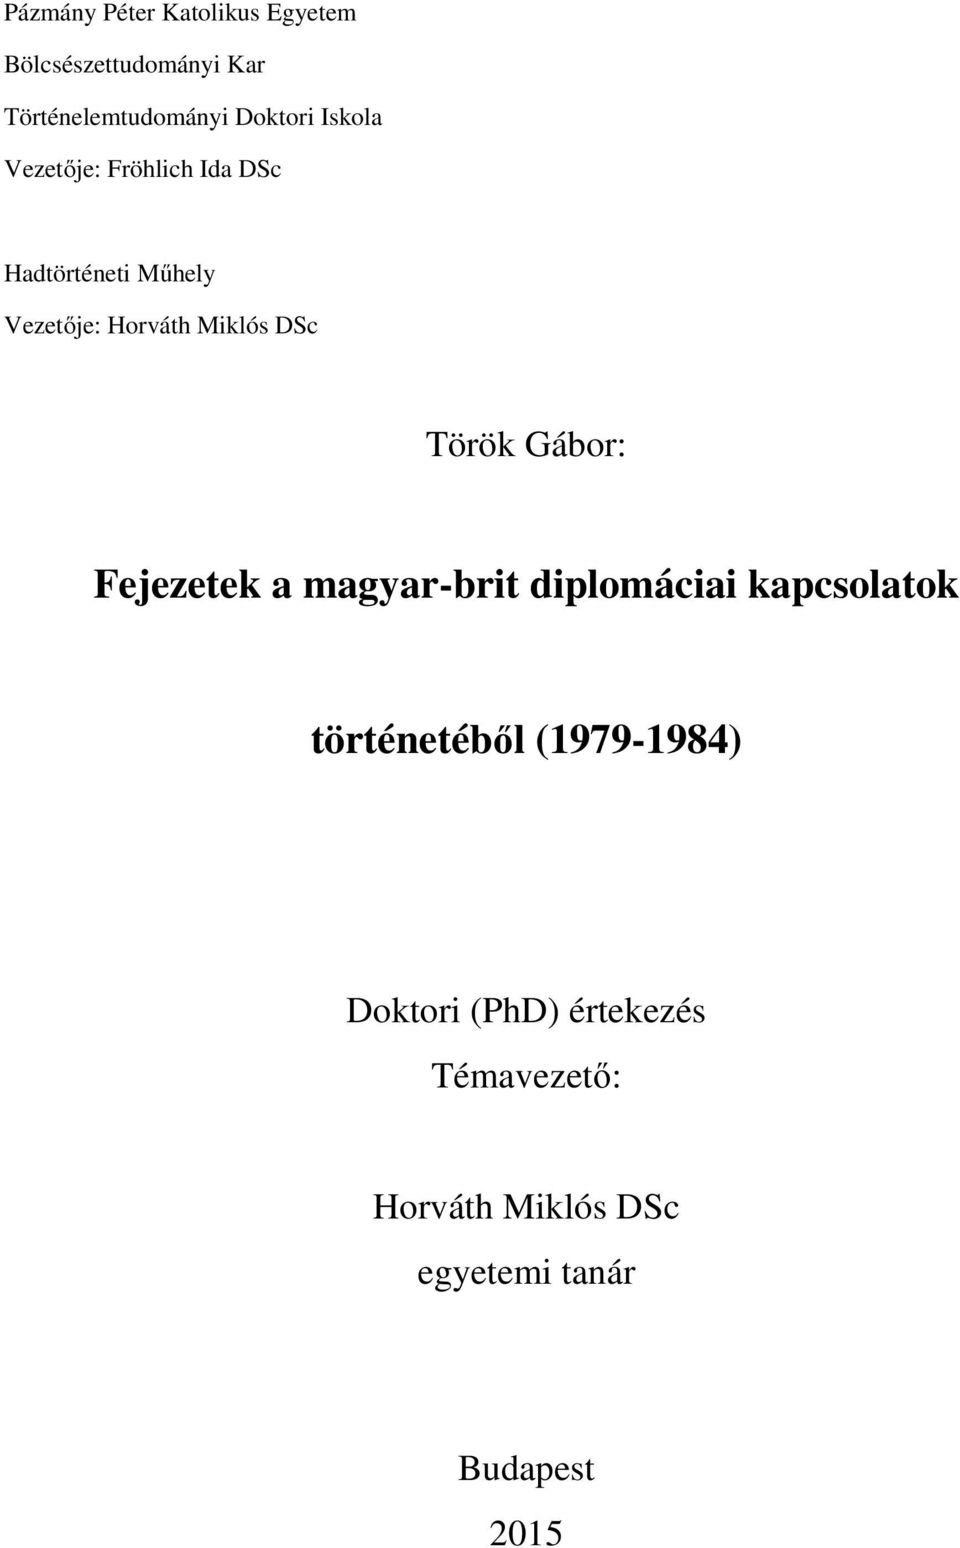 Török Gábor: Fejezetek a magyar-brit diplomáciai kapcsolatok történetéből